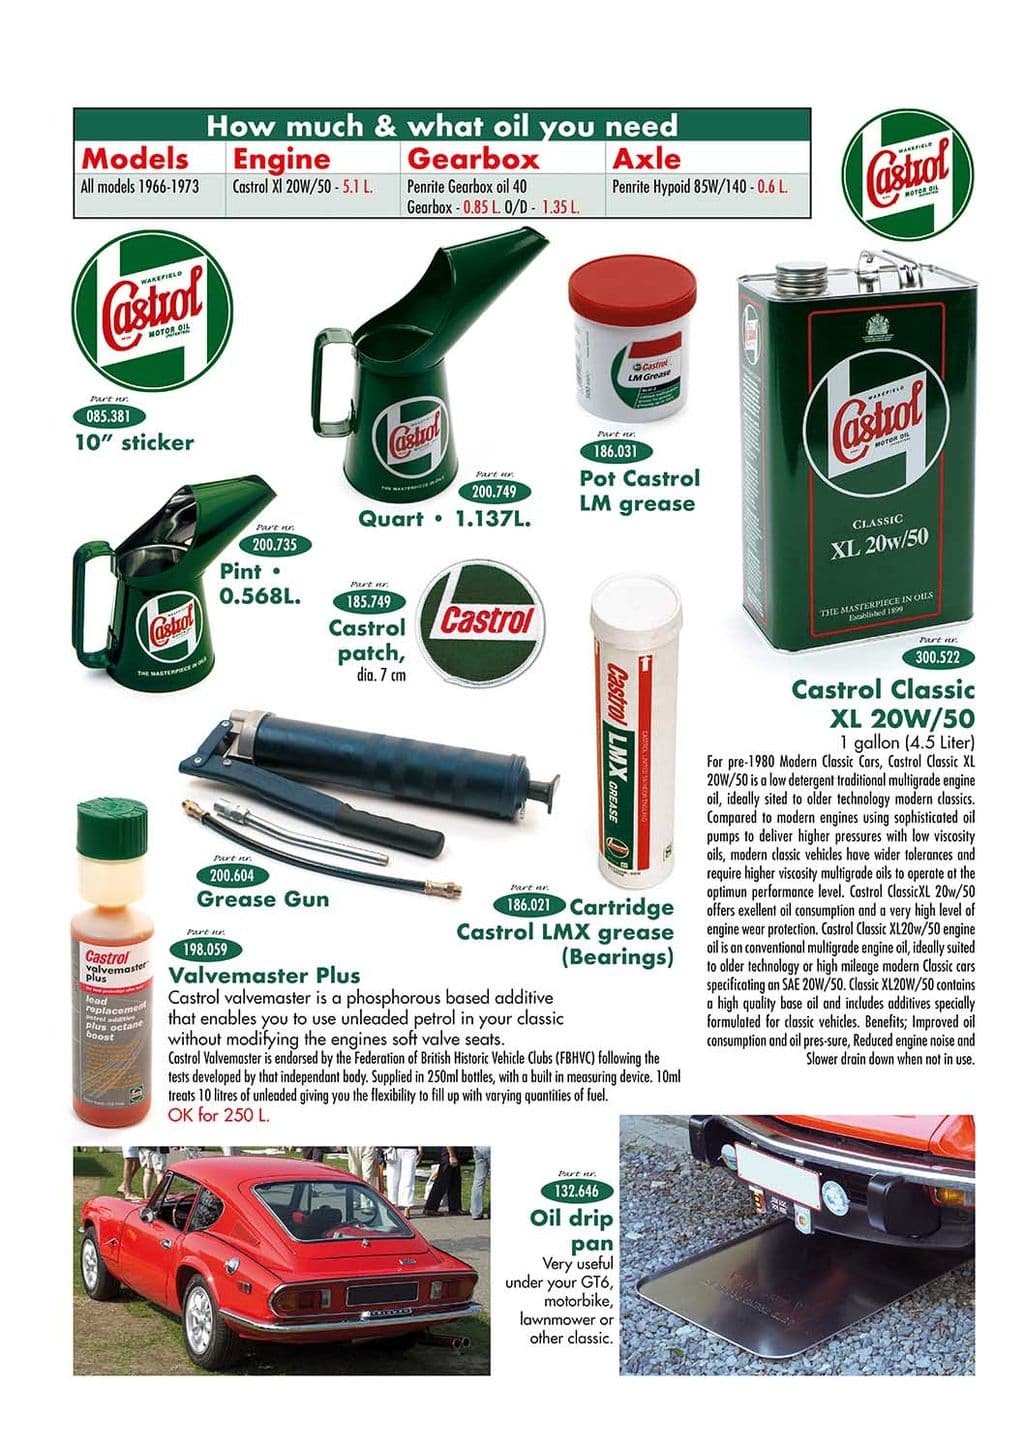 Oil cans & drip pan - Plaque de récupération d'huile - Entretien & stockage - Triumph GT6 MKI-III 1966-1973 - Oil cans & drip pan - 1